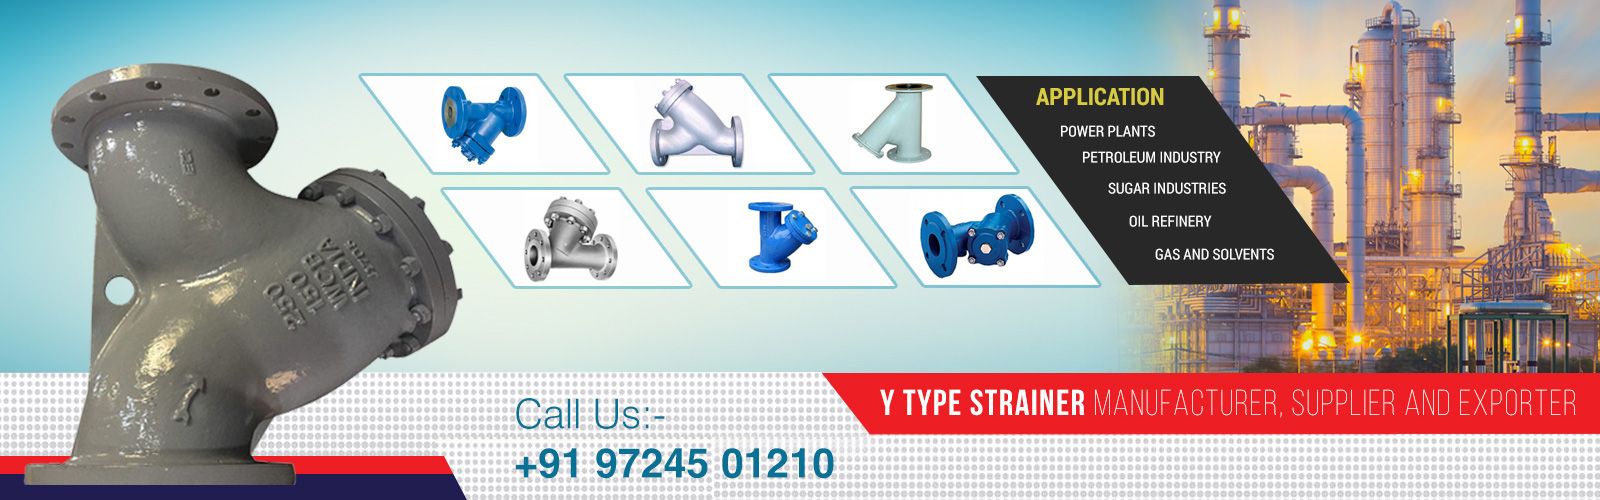 Y Type Strainer manufacturer